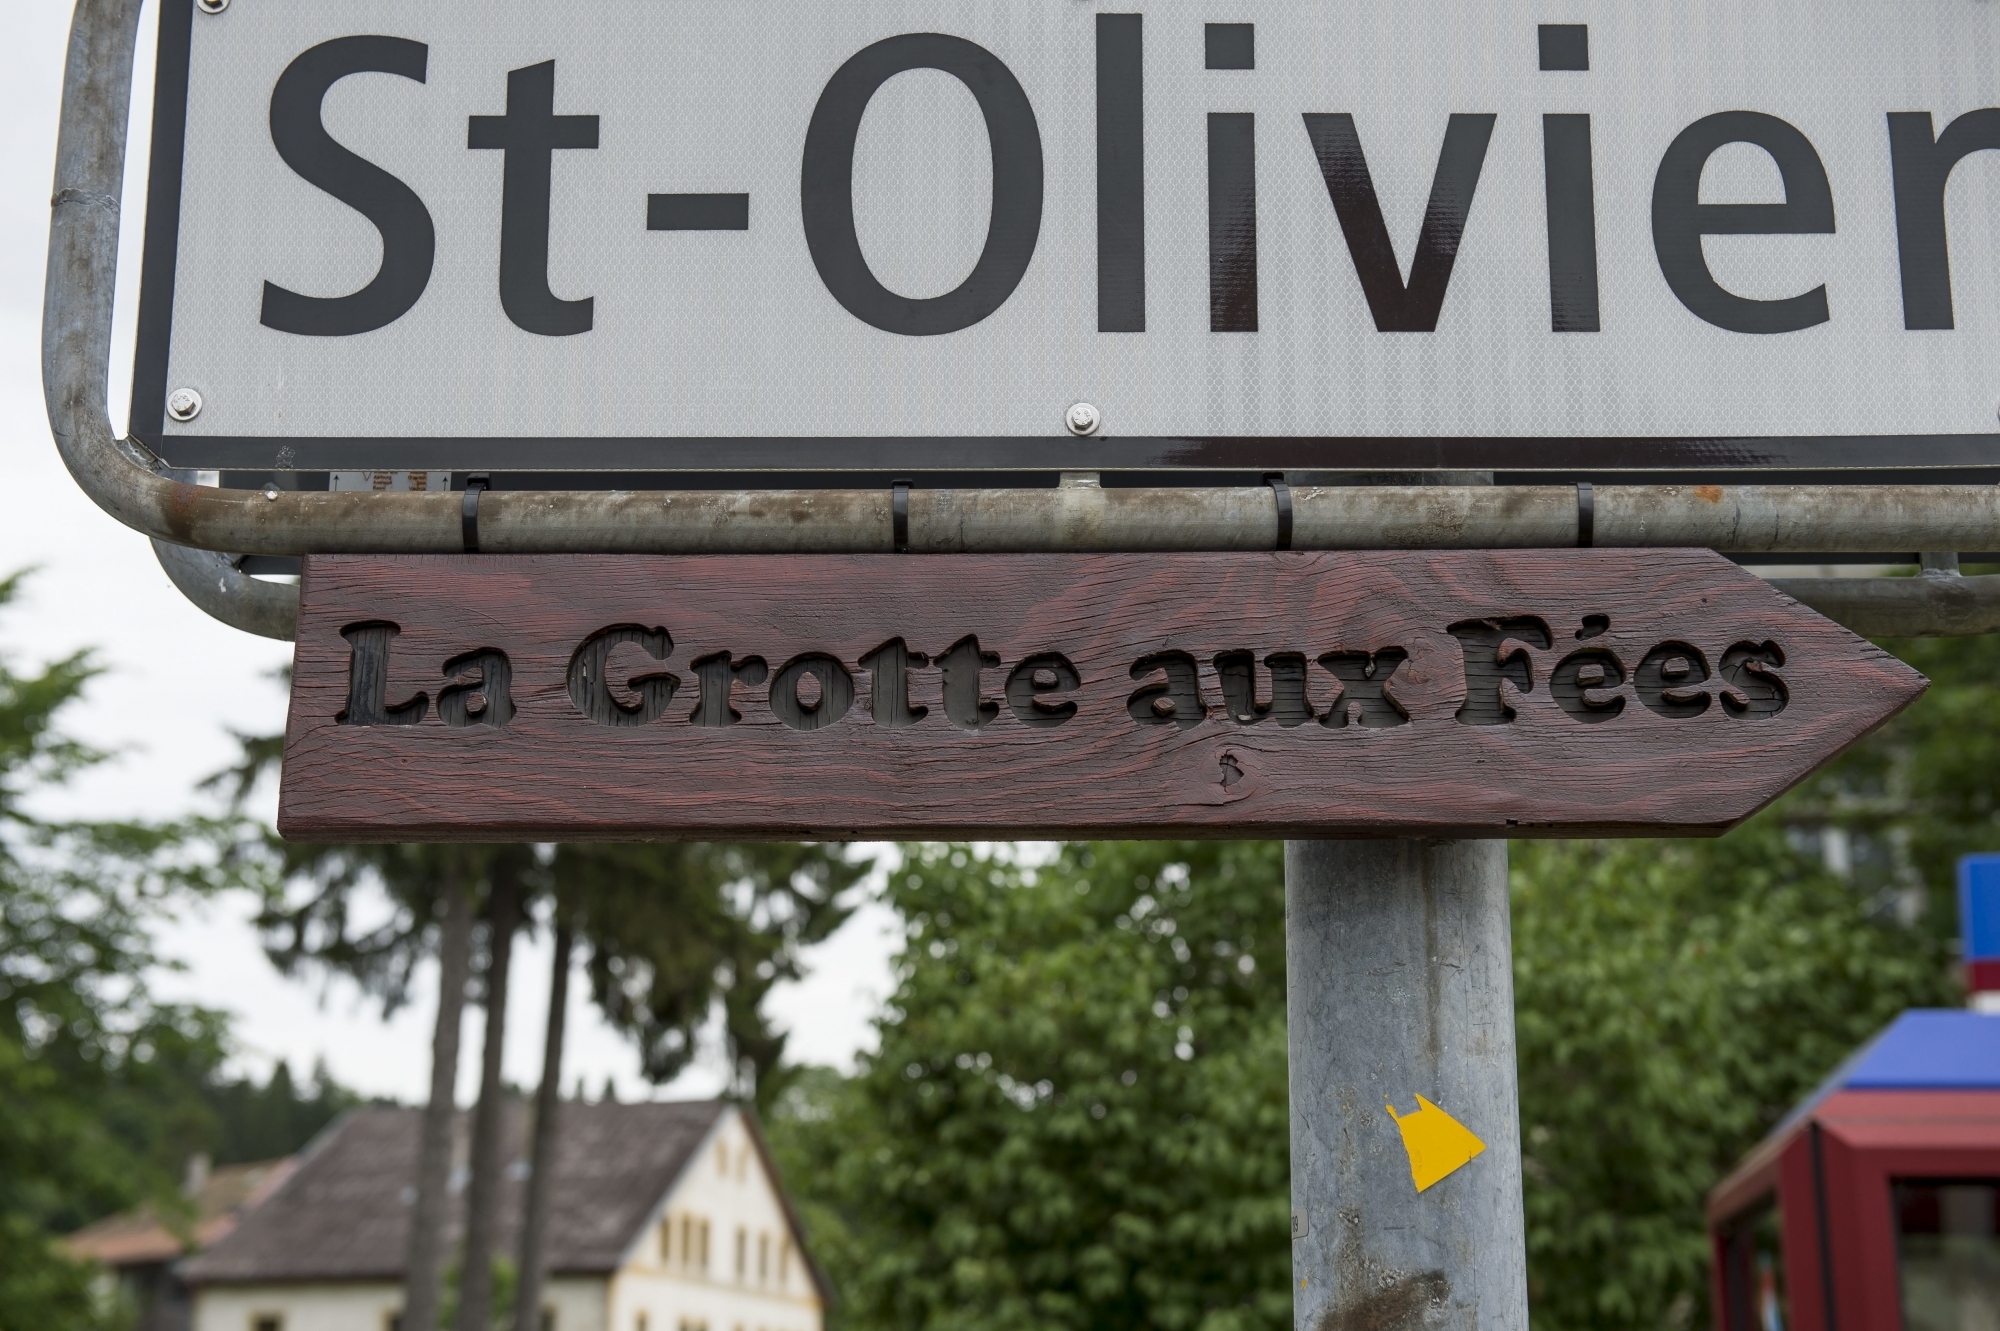 L'antenne dont la transformation est à l'étude se situe au hameau de la Saint-Olivier, sur le chemin de la Grotte aux fées.